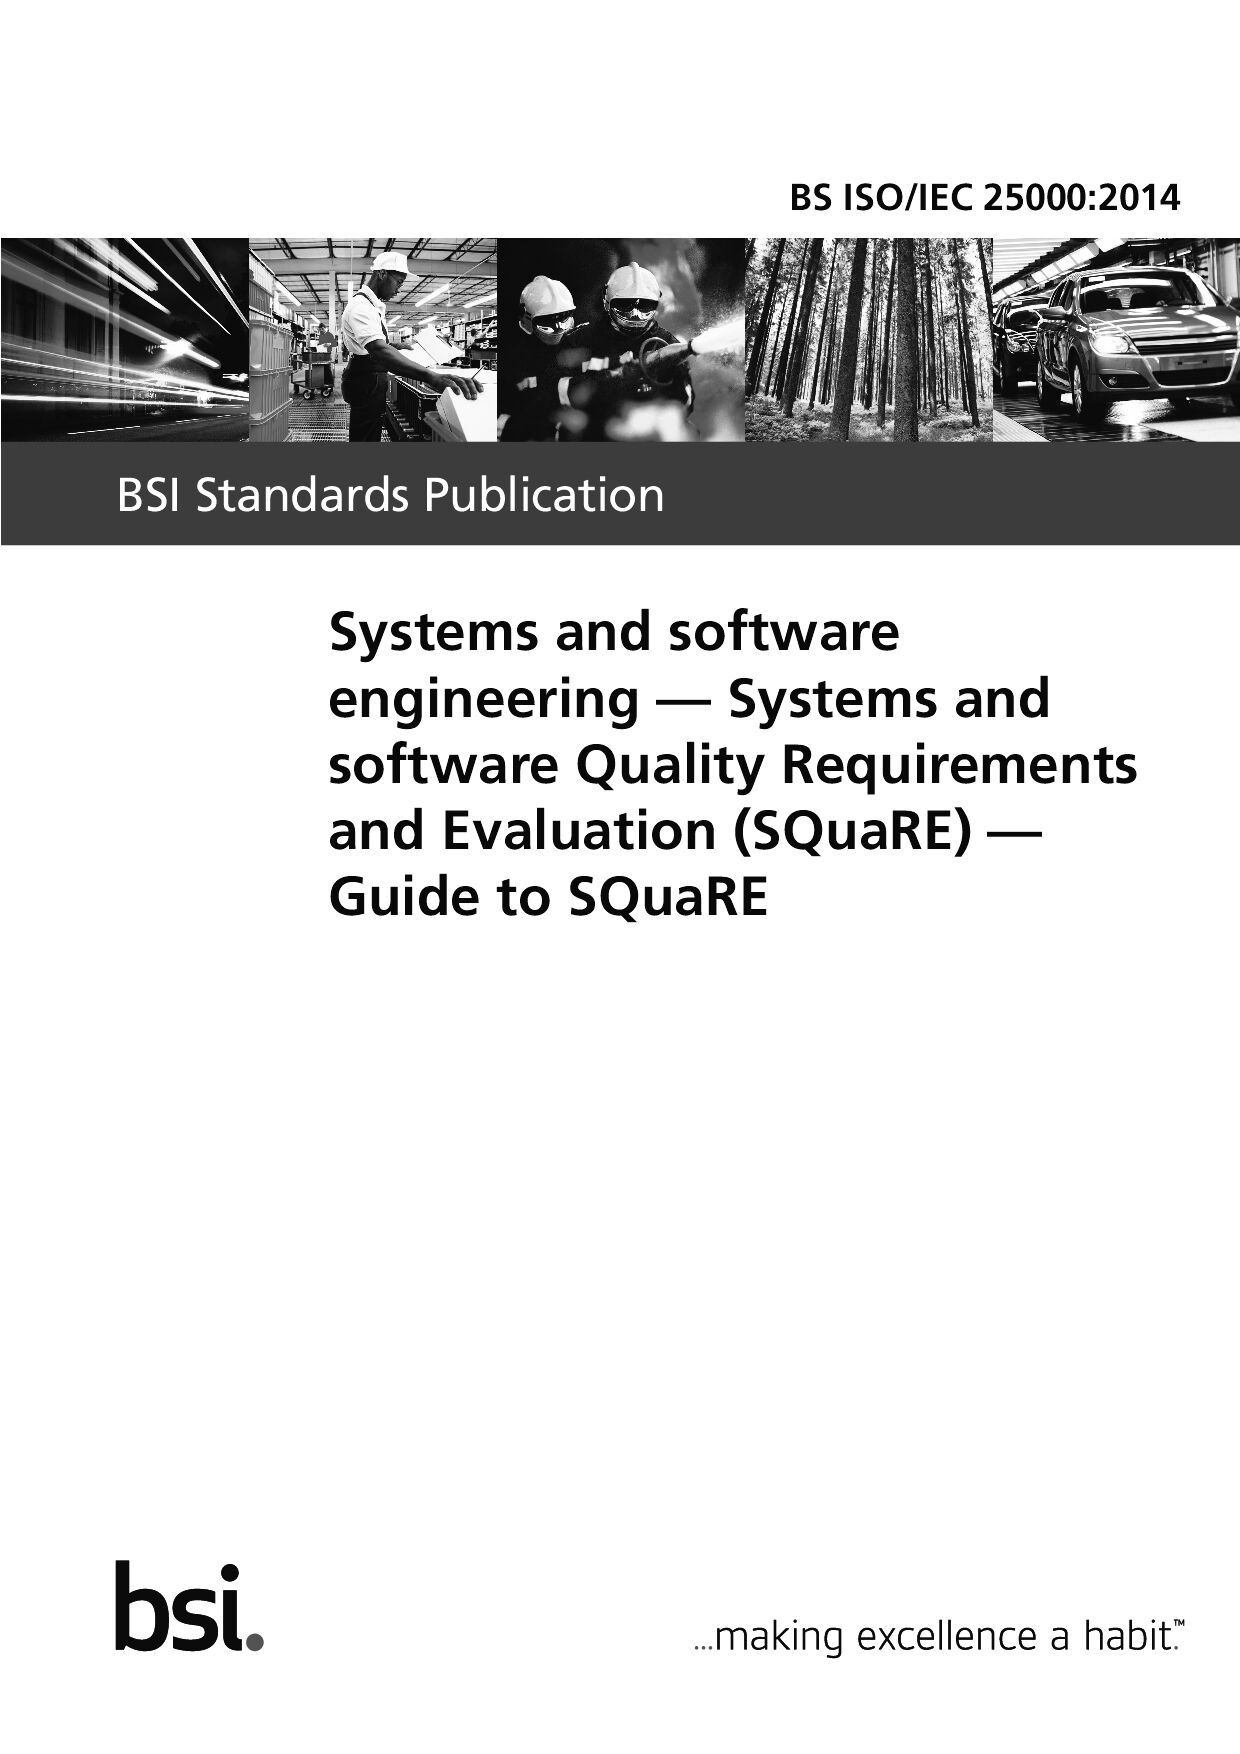 BS ISO/IEC 25000:2014封面图